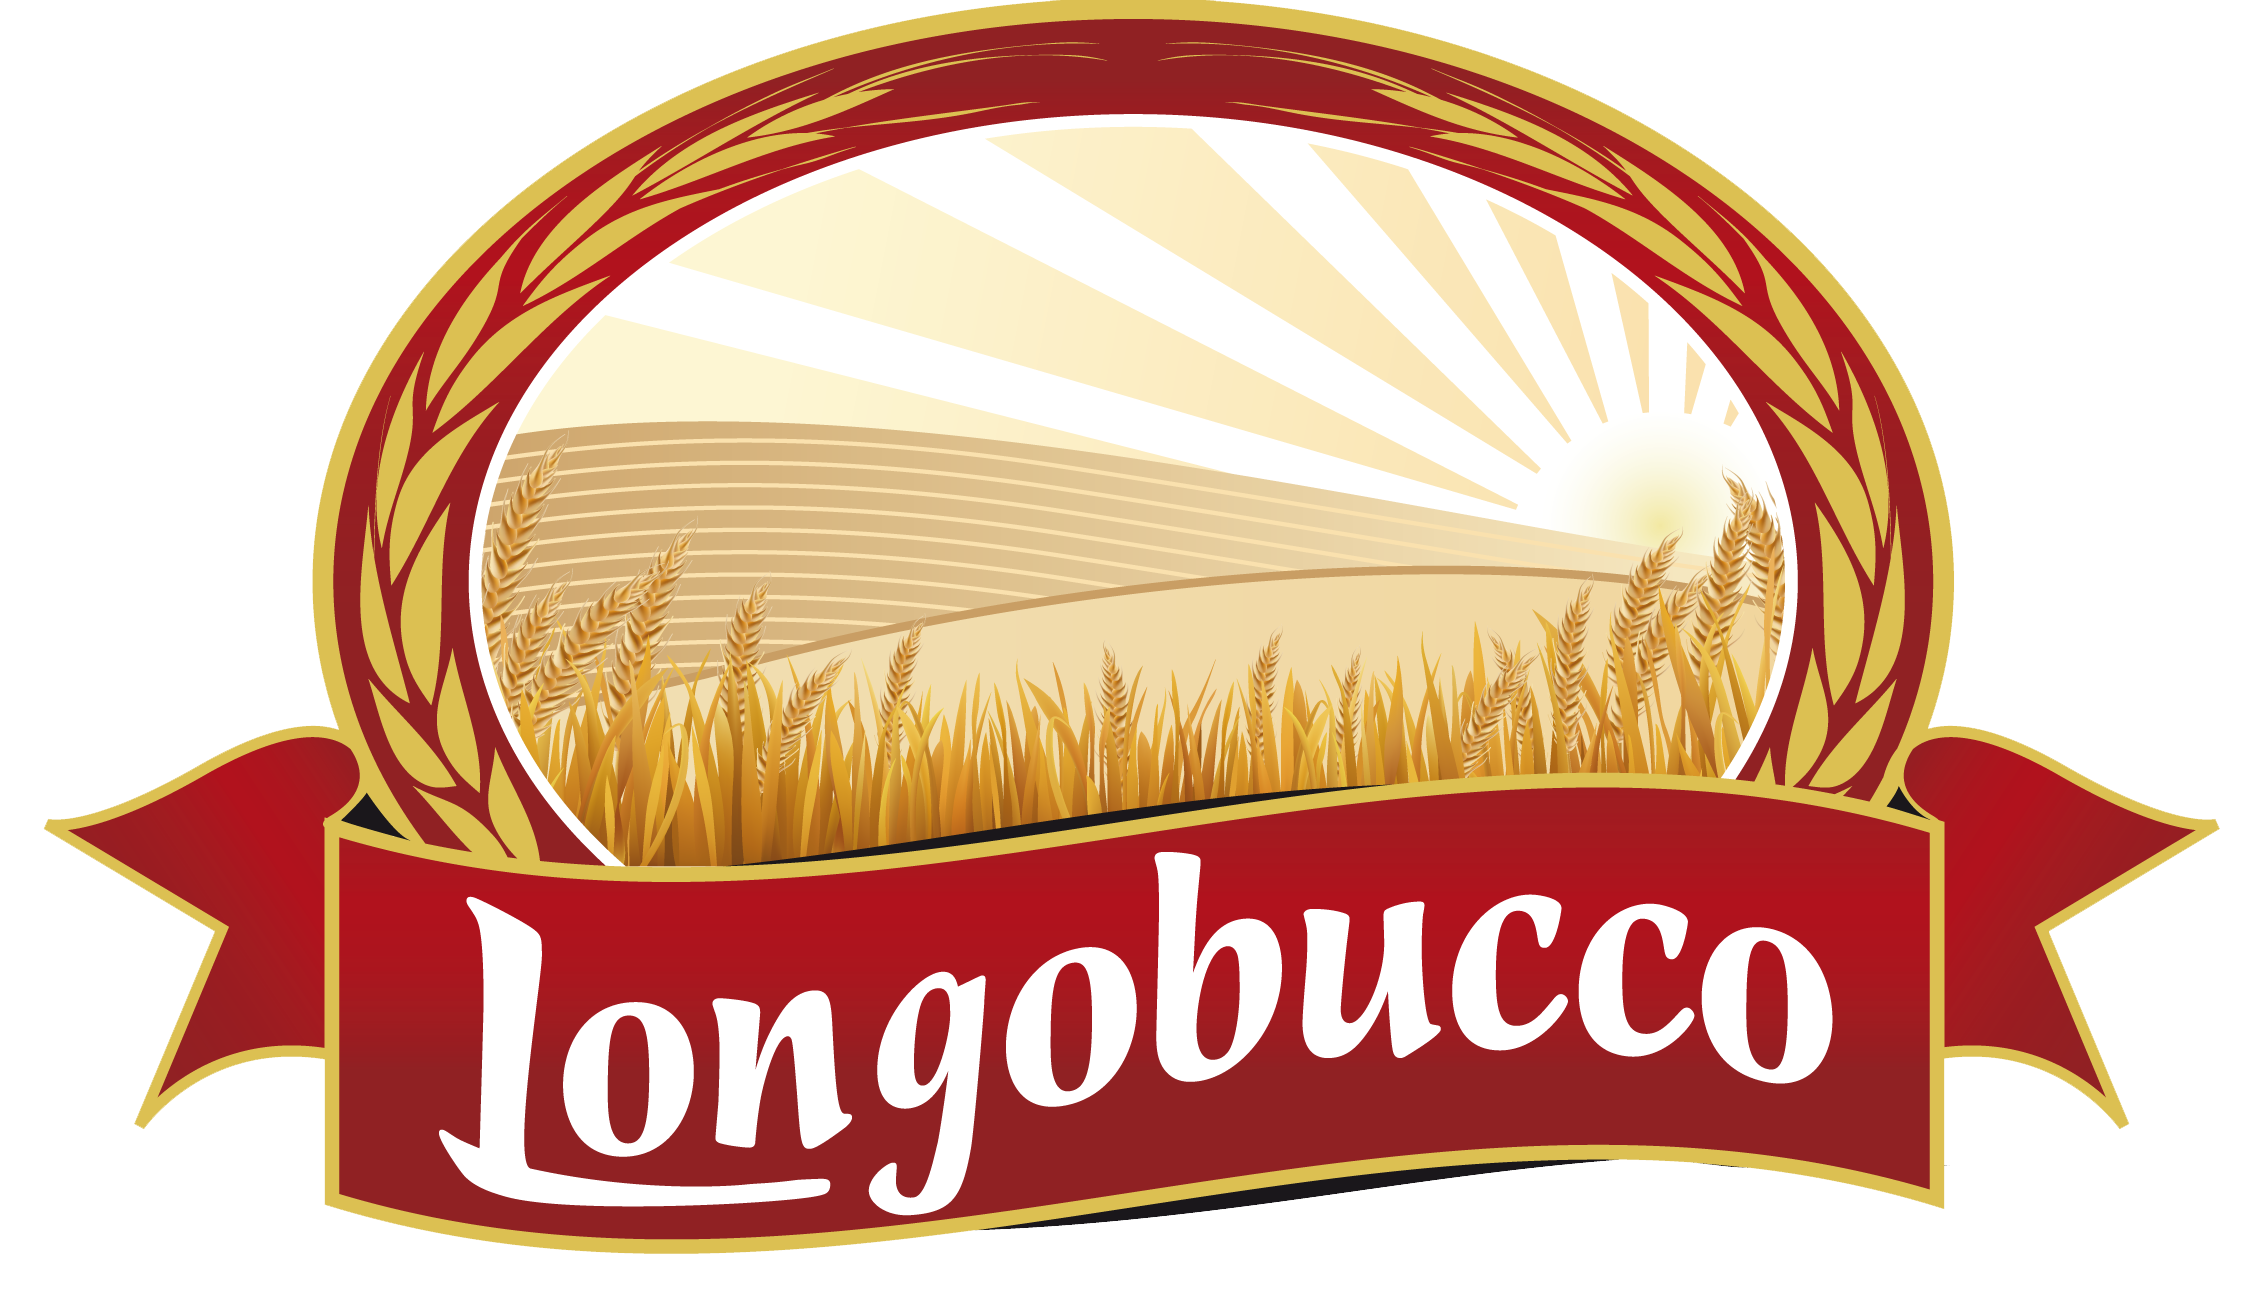 Longobucco Srl